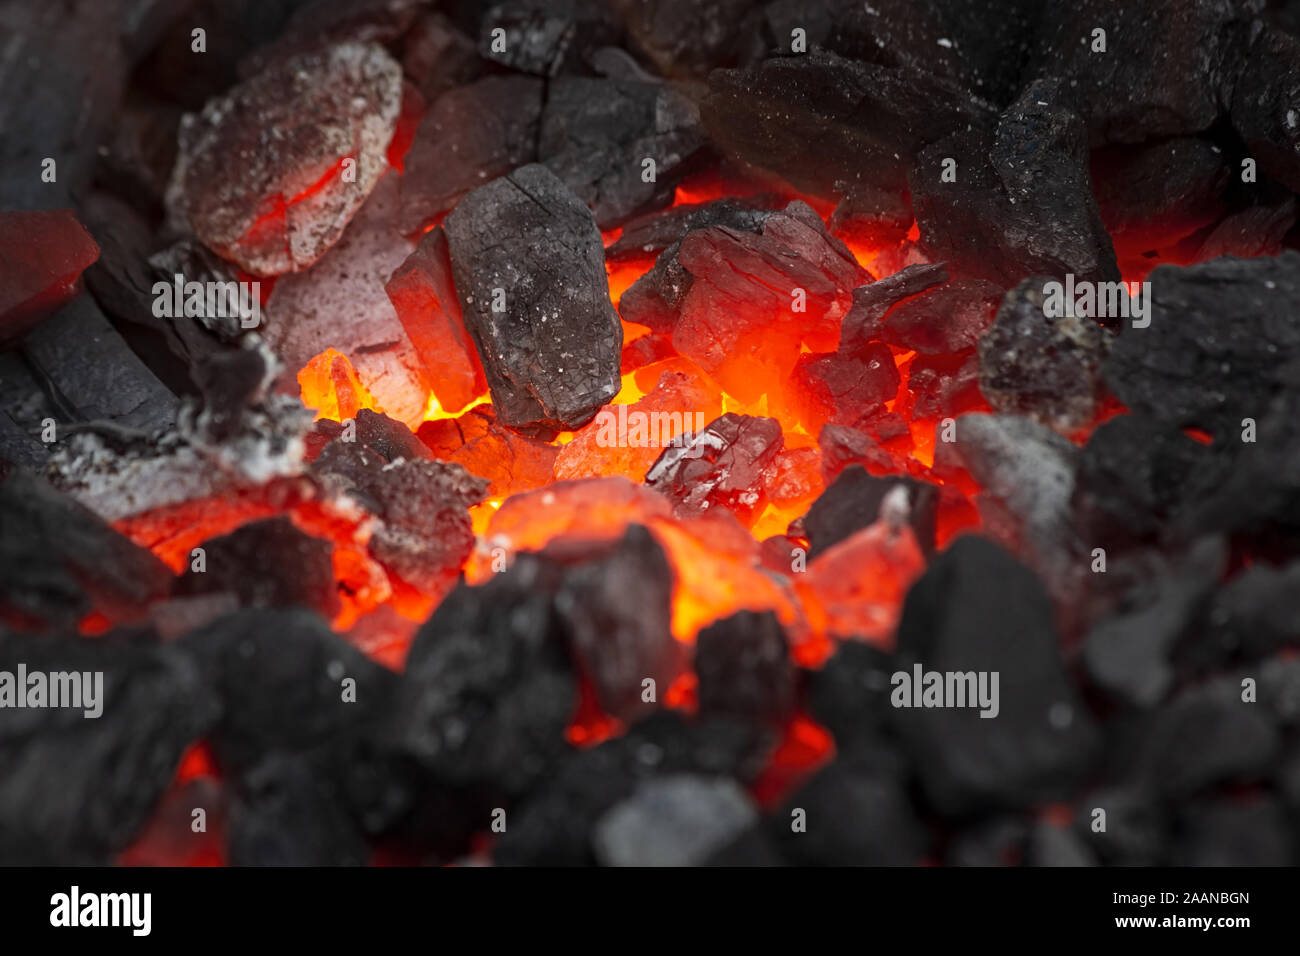 Itglieder Leuchten in einem bonfire, Ansicht schließen. Feuer, Hitze, Kohle und Asche. Stockfoto